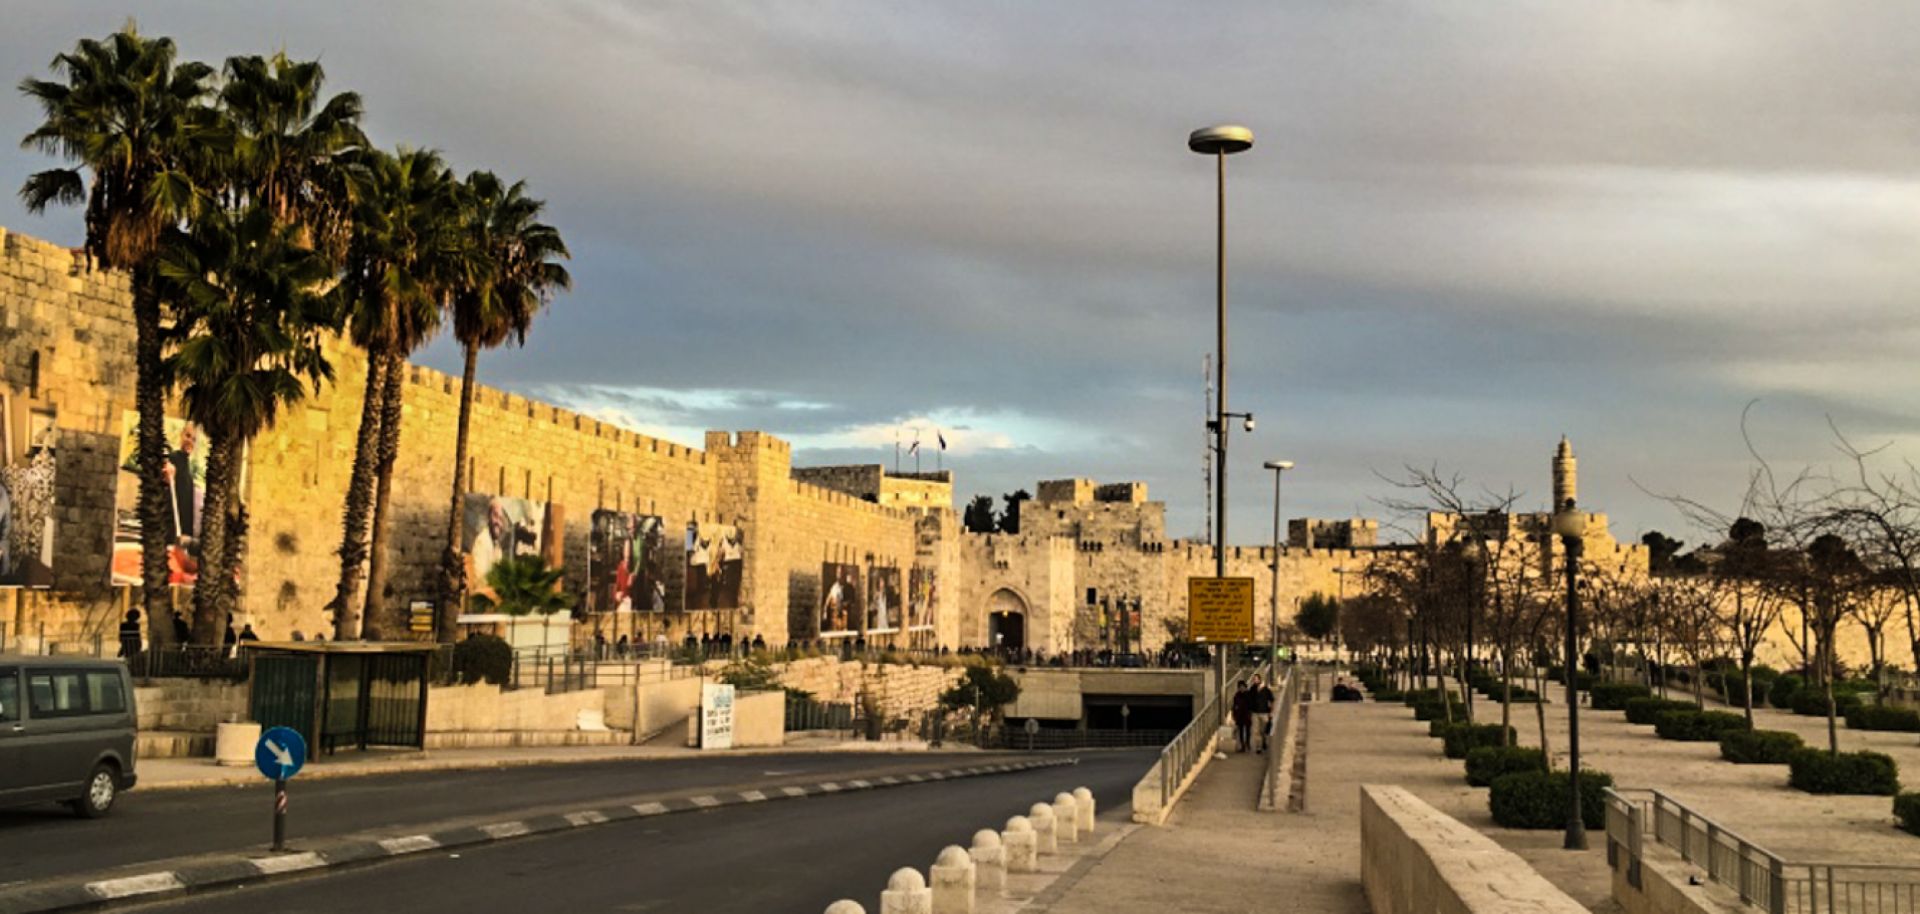 Entrance to the Old City of Jerusalem.